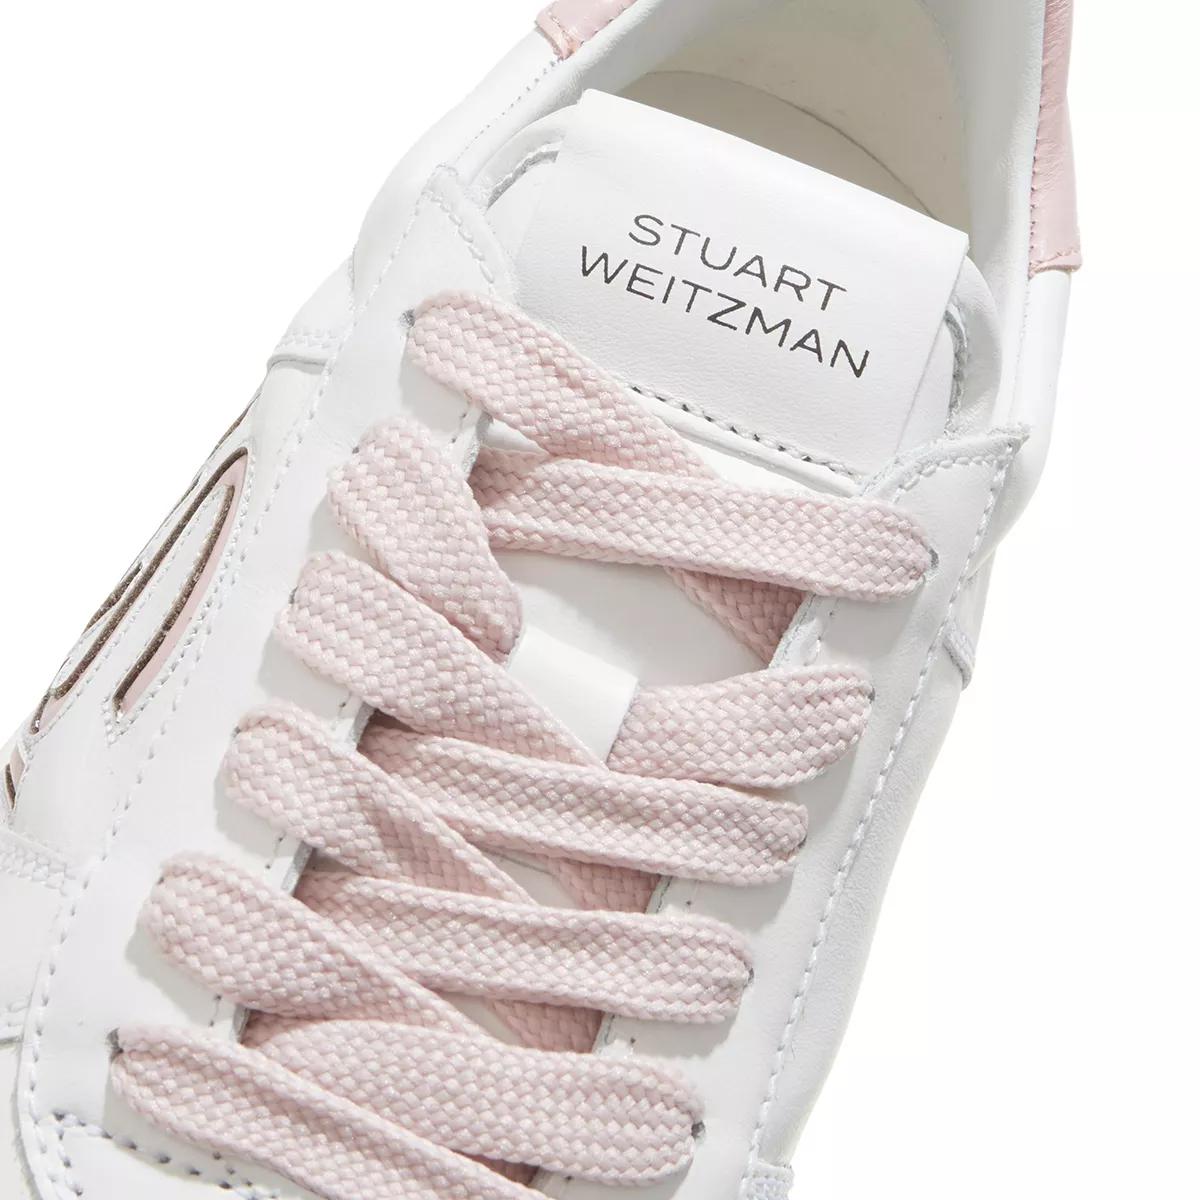 Stuart Weitzman Sneakers - SW COURTSIDE LOGO SNEAKER - Gr. 40 (EU) - in Weiß - für Damen von Stuart Weitzman